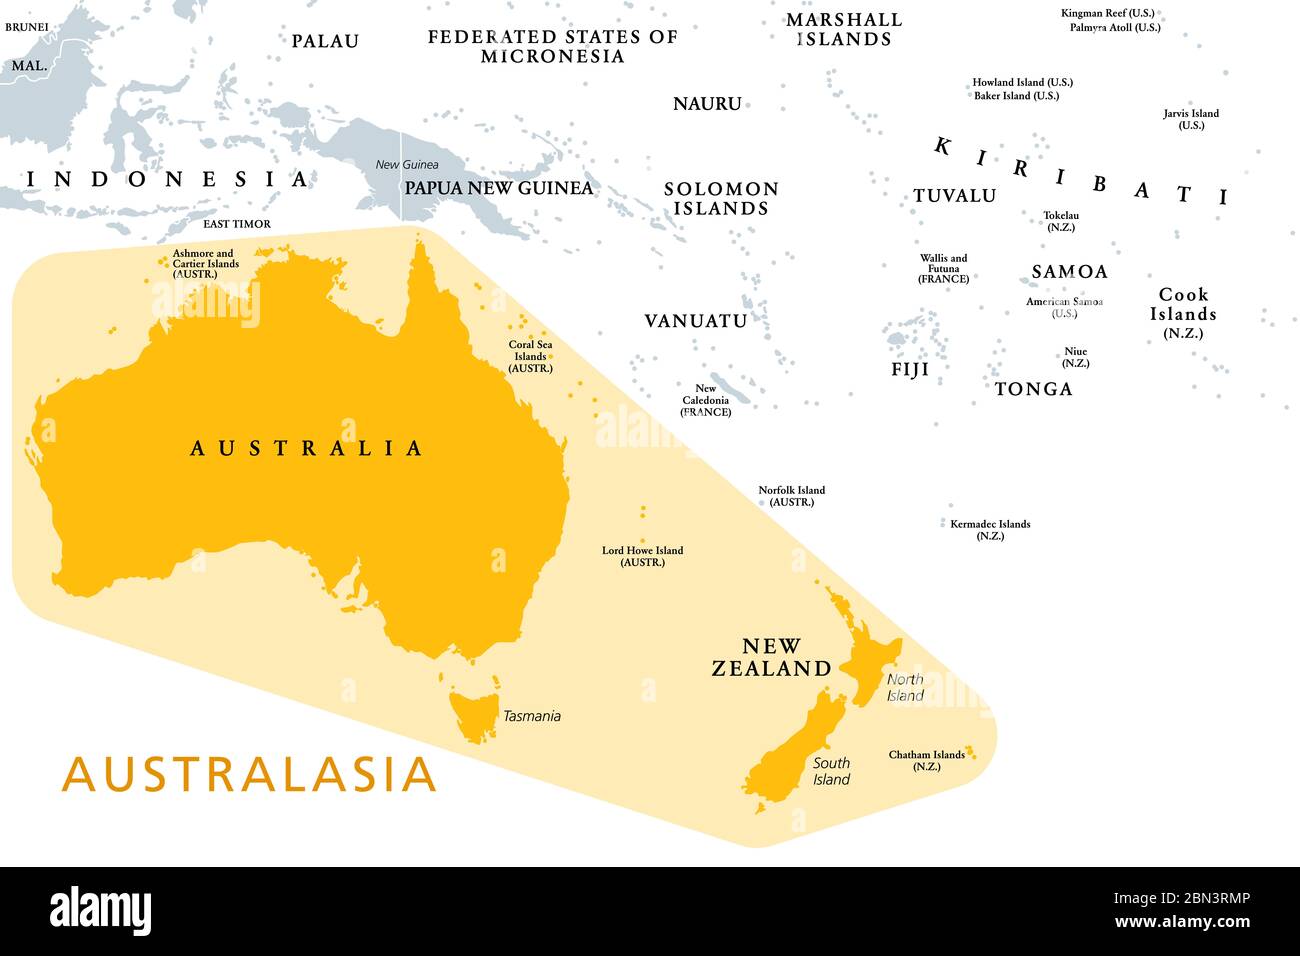 Australasie, Australie et Nouvelle-Zélande, sous-région de l'Océanie, carte politique. Dans un geoscheme le continent Australie avec la Nouvelle-Zélande. Banque D'Images